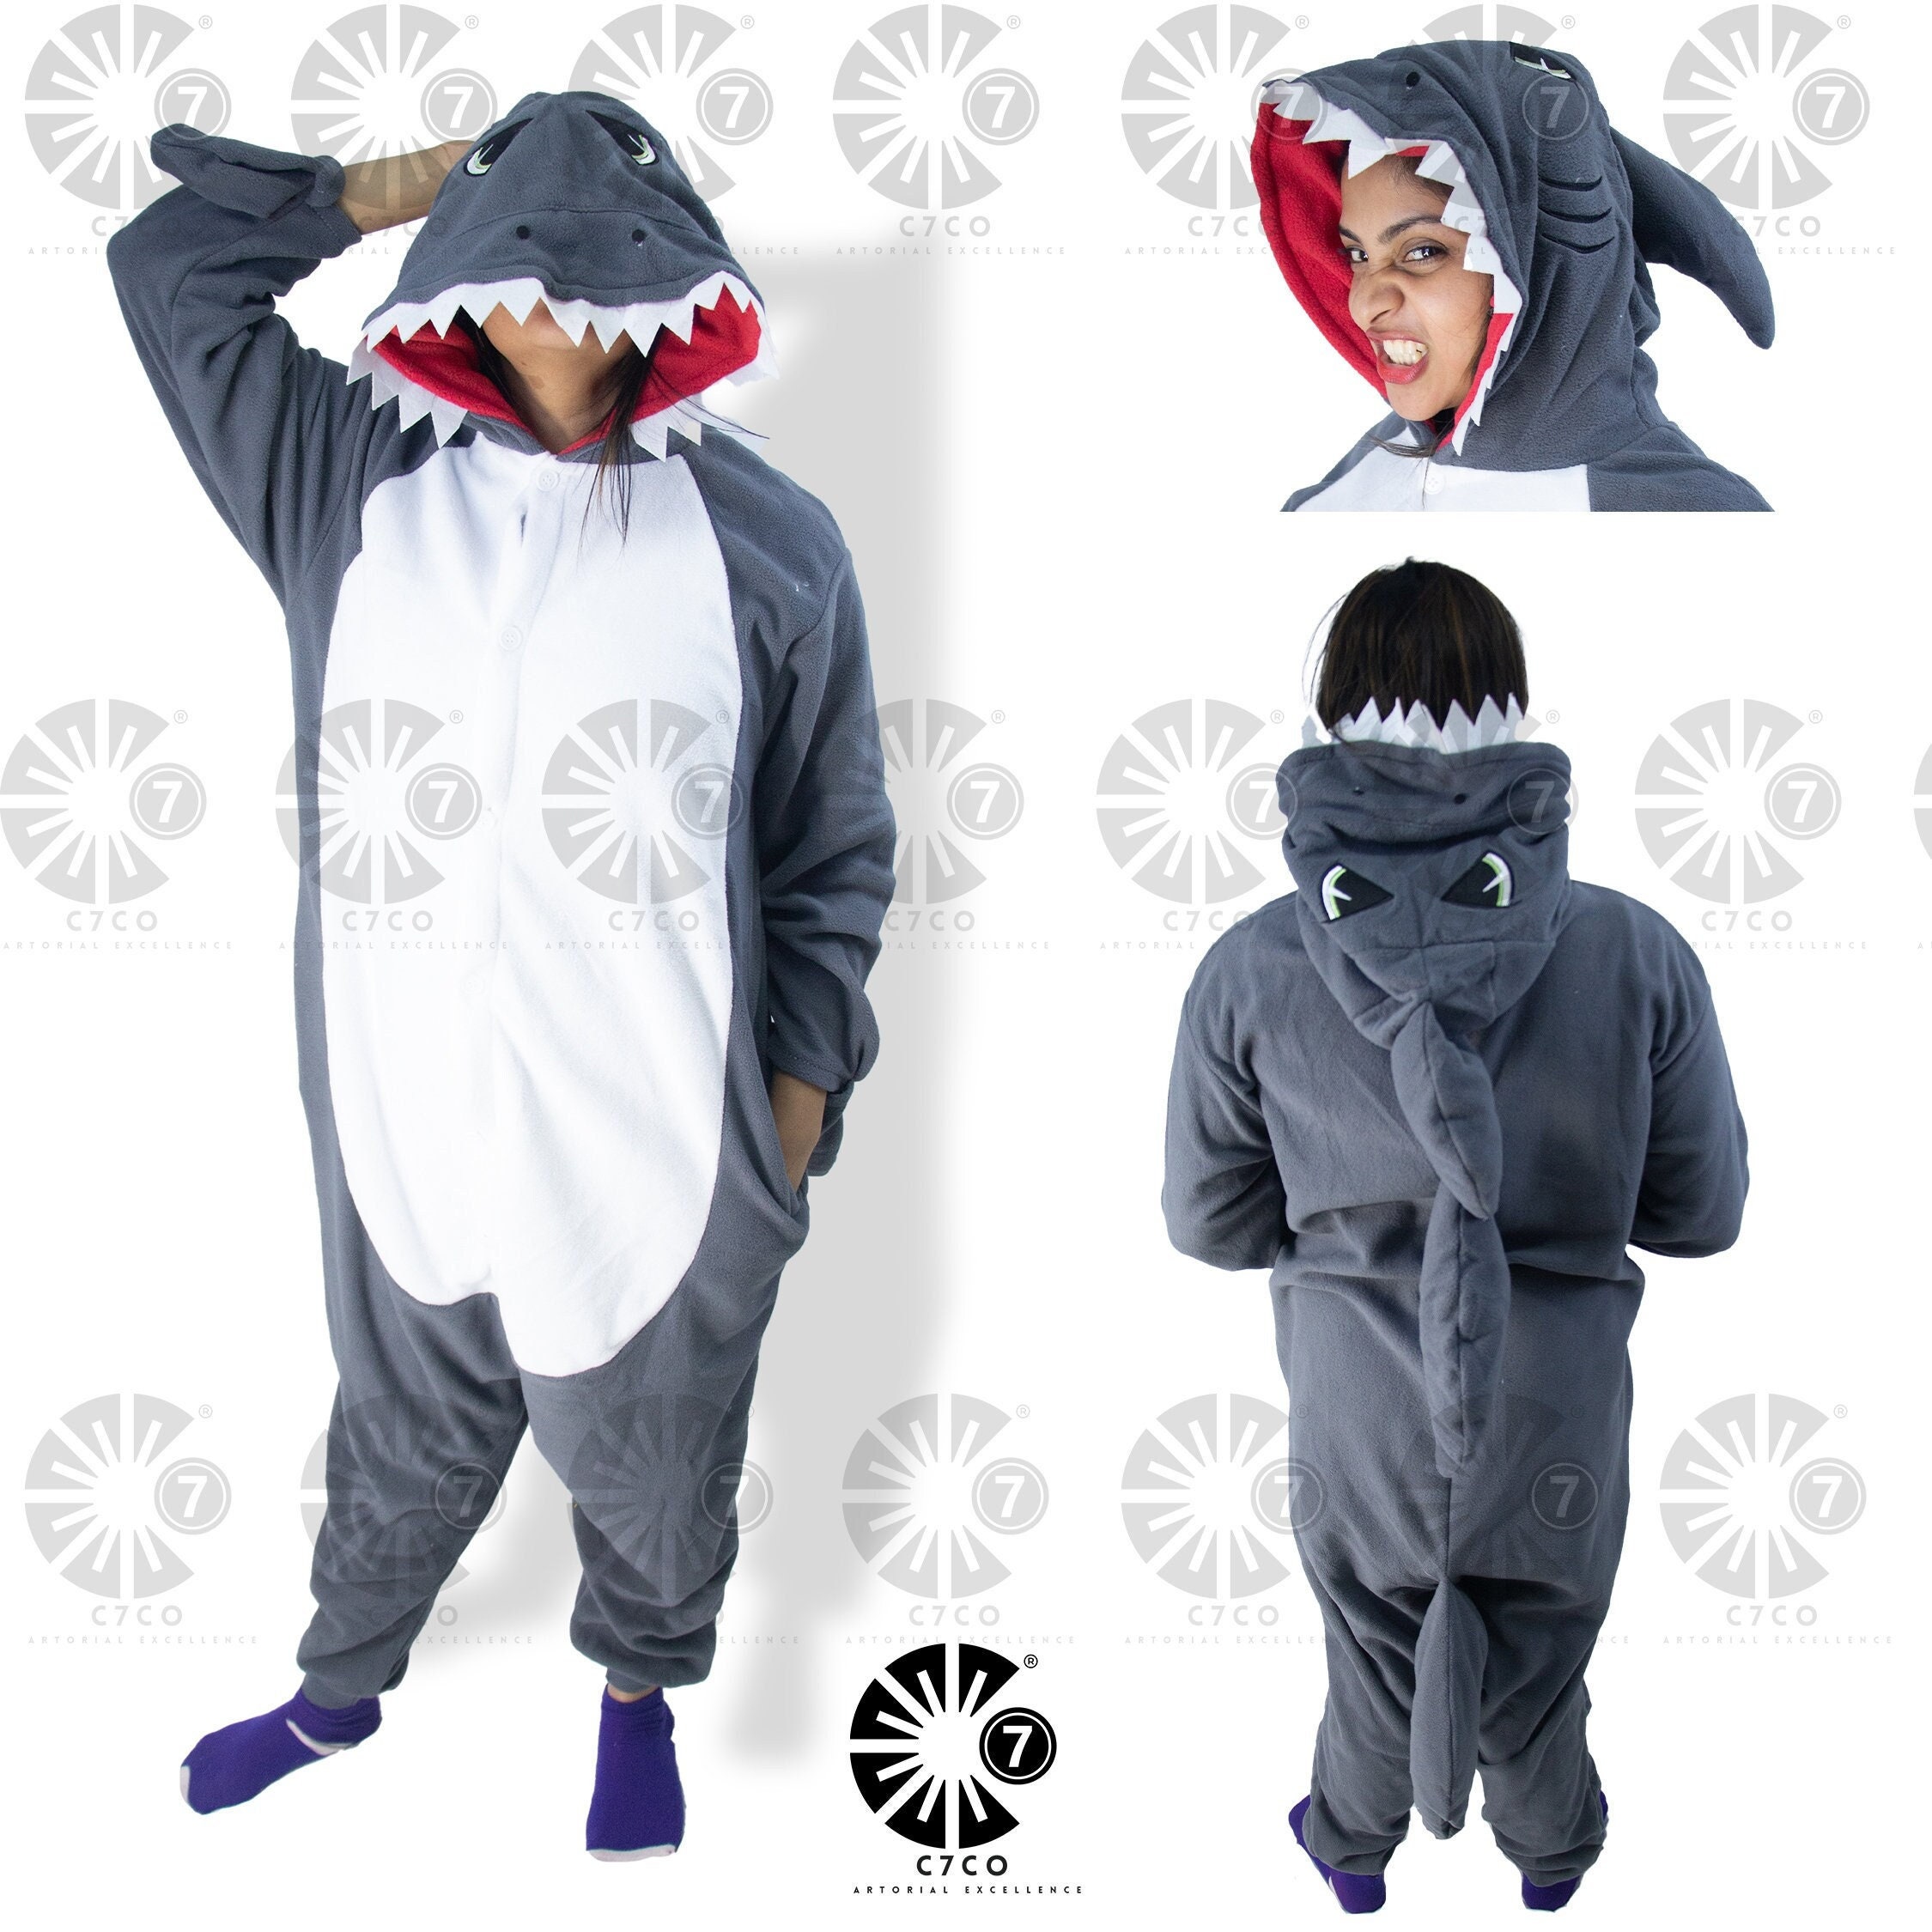 Pijama Kigurumi Tiburón Gris - Shark